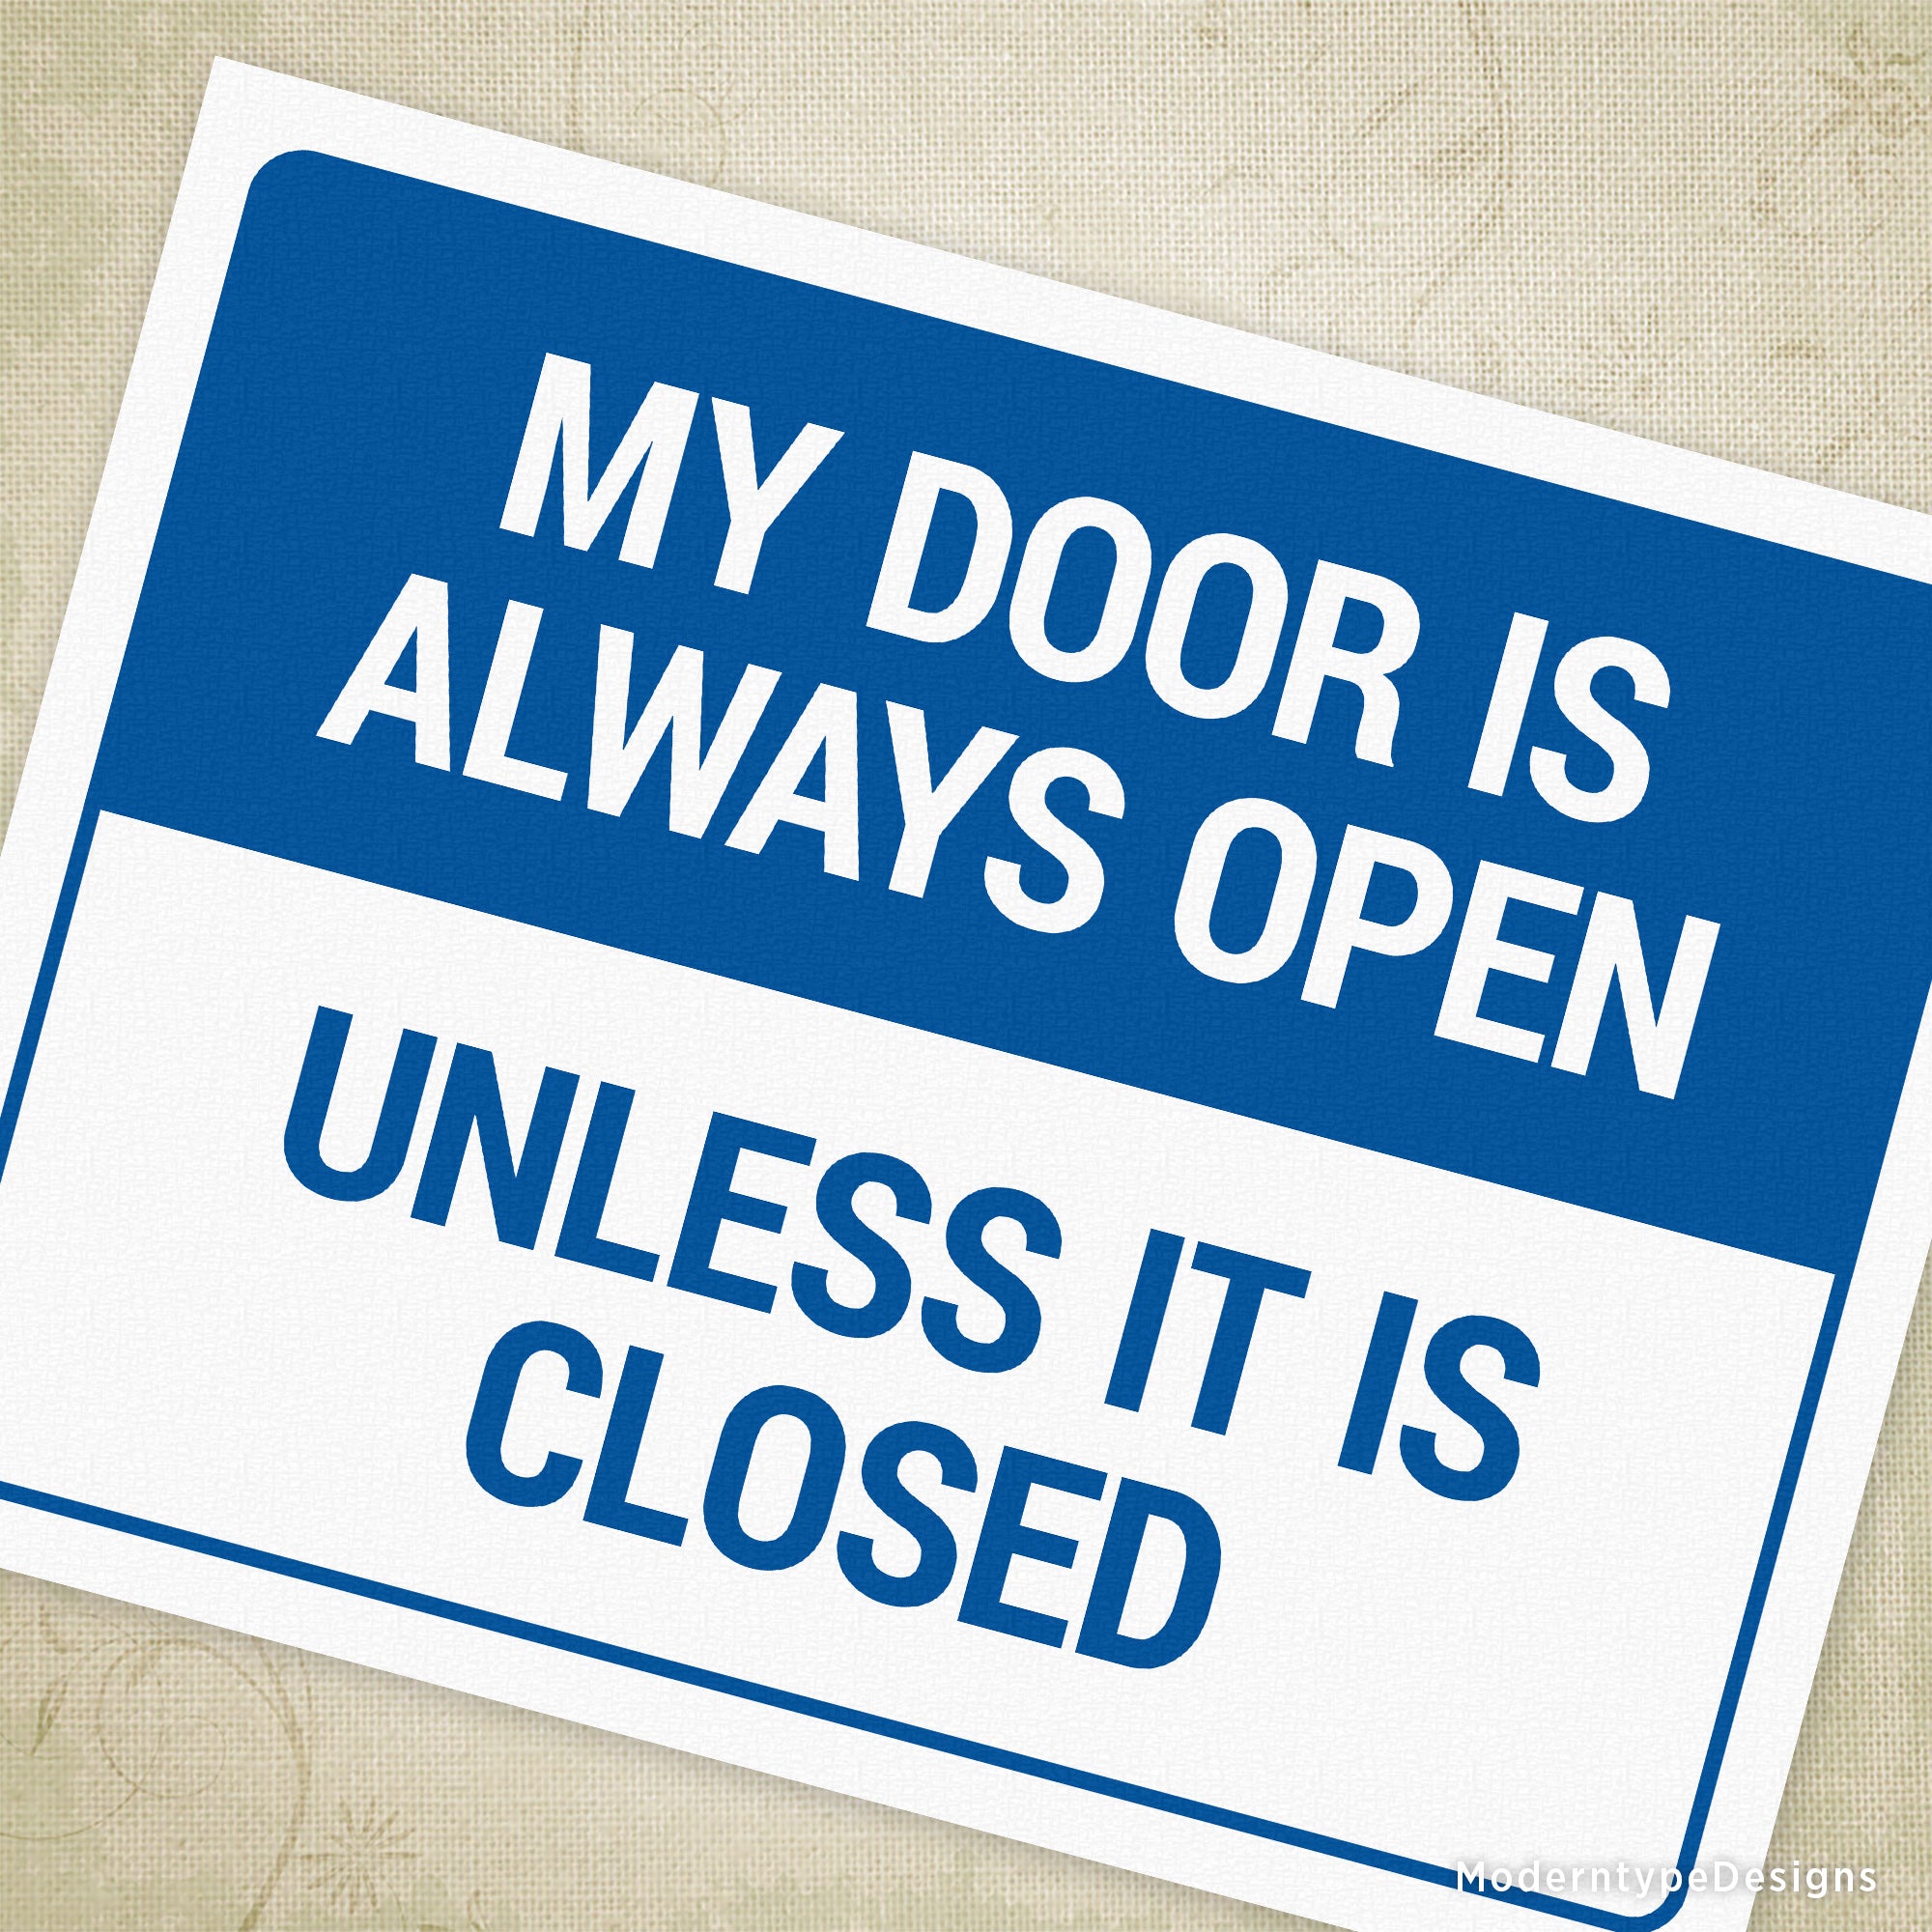 Door Is Open Unless It Is Closed Printable Sign